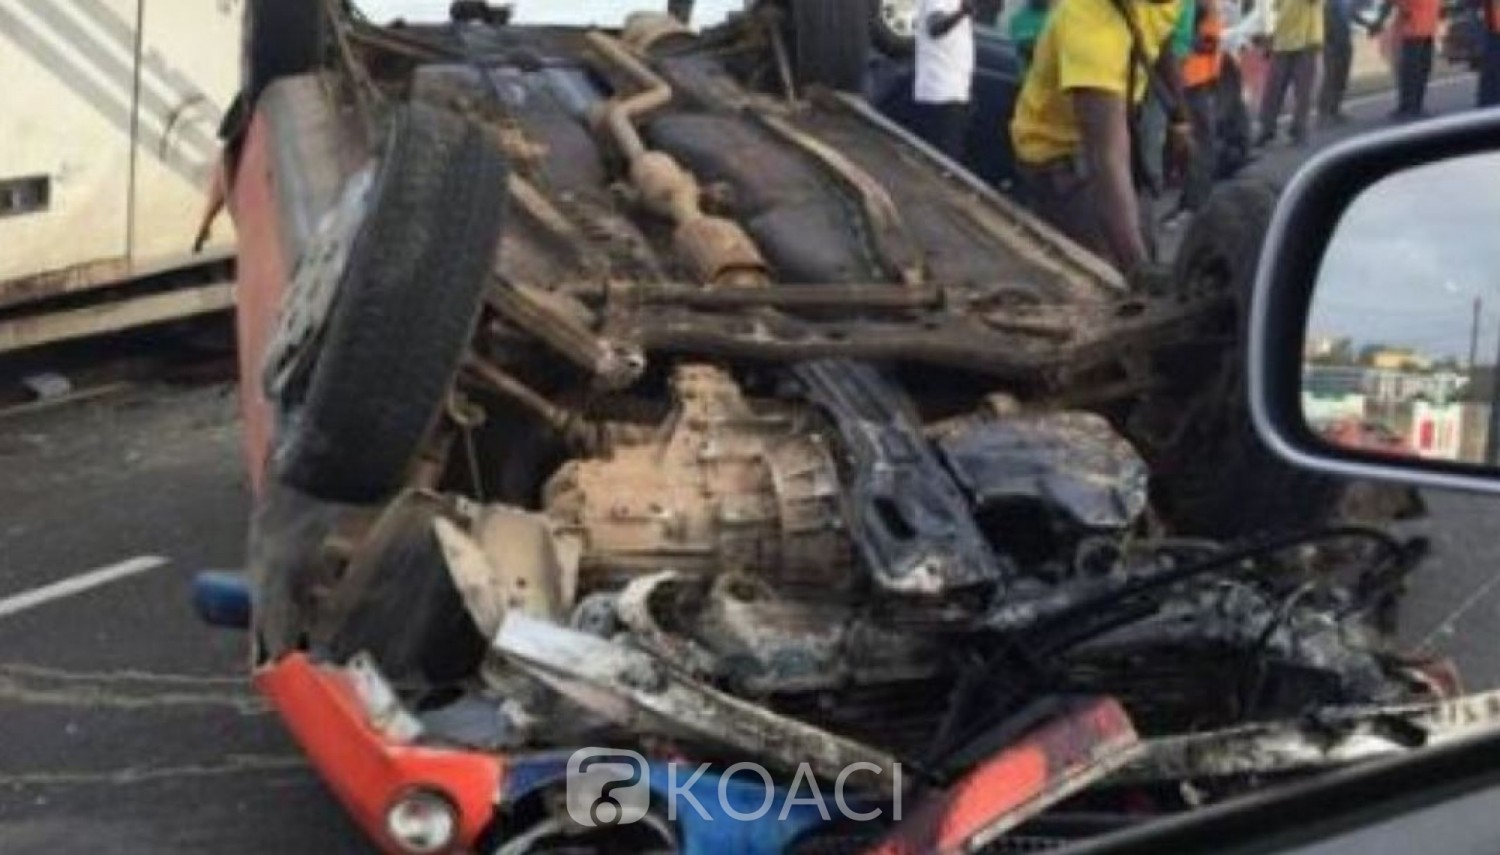 Côte d'Ivoire : Cinq personnes périssent dans un accident de la circulation